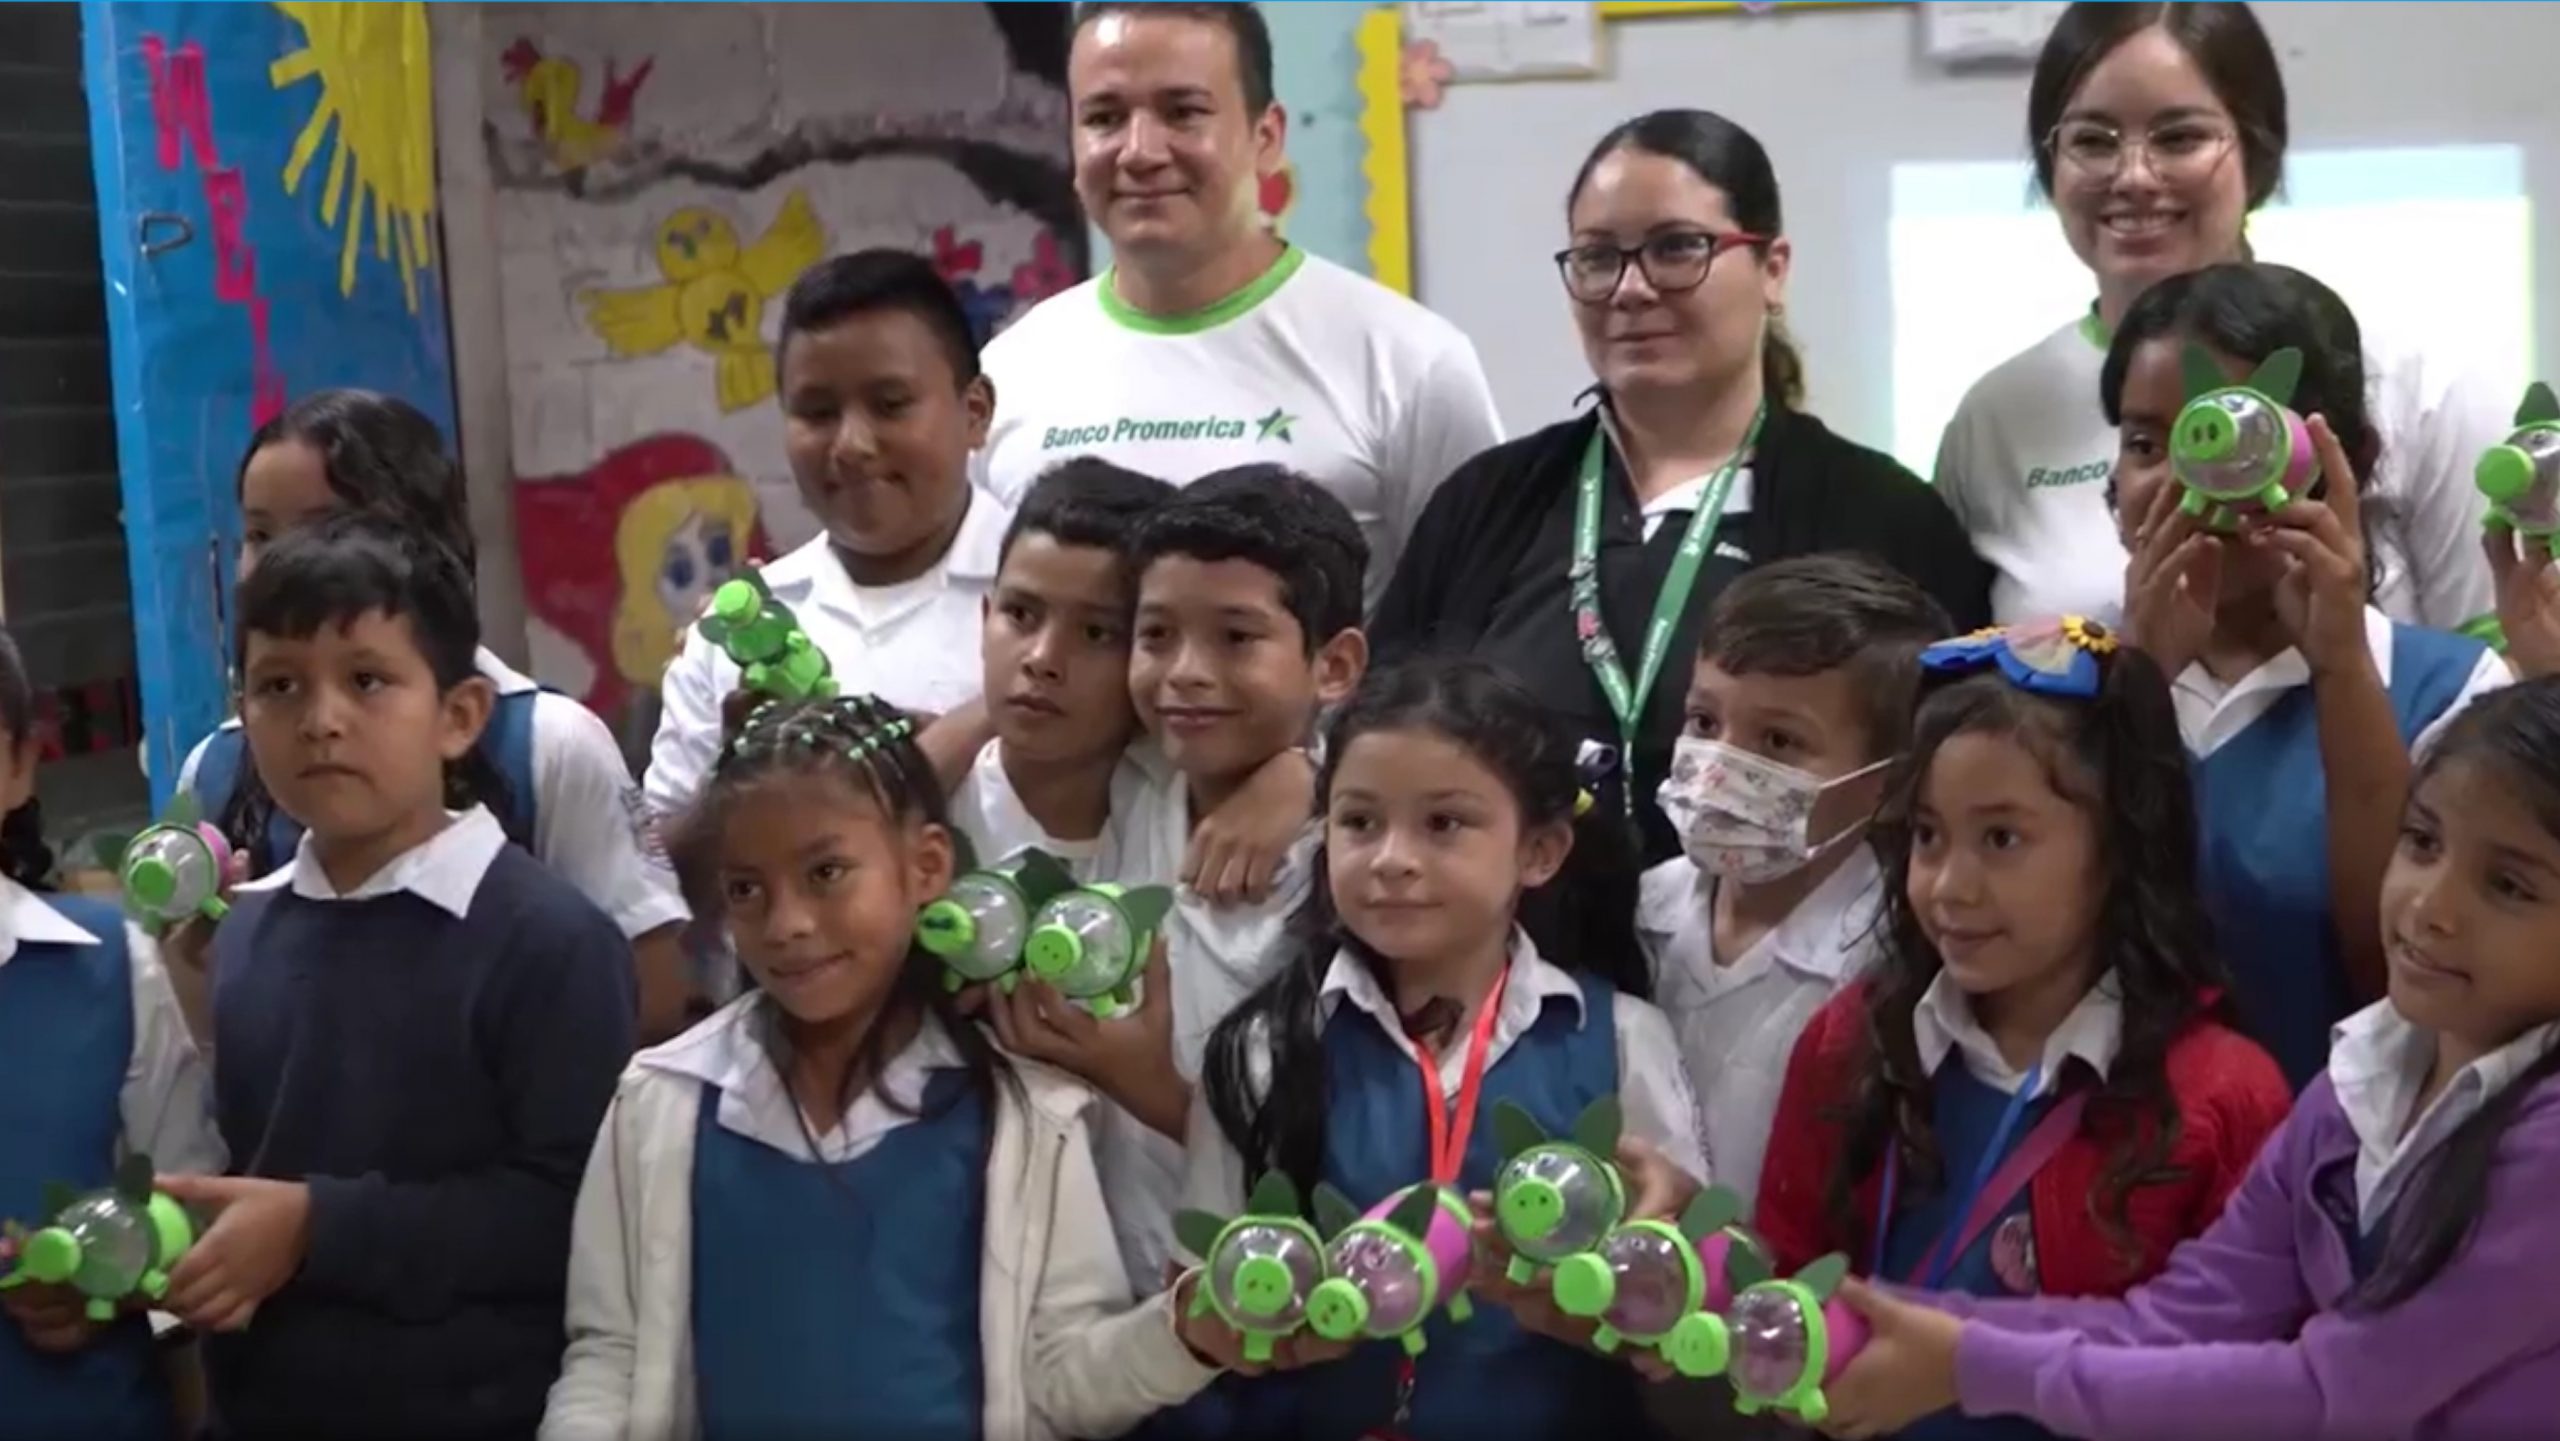 Escuelas Amigables enseña a estudiantes hondureños educación medio ambiental